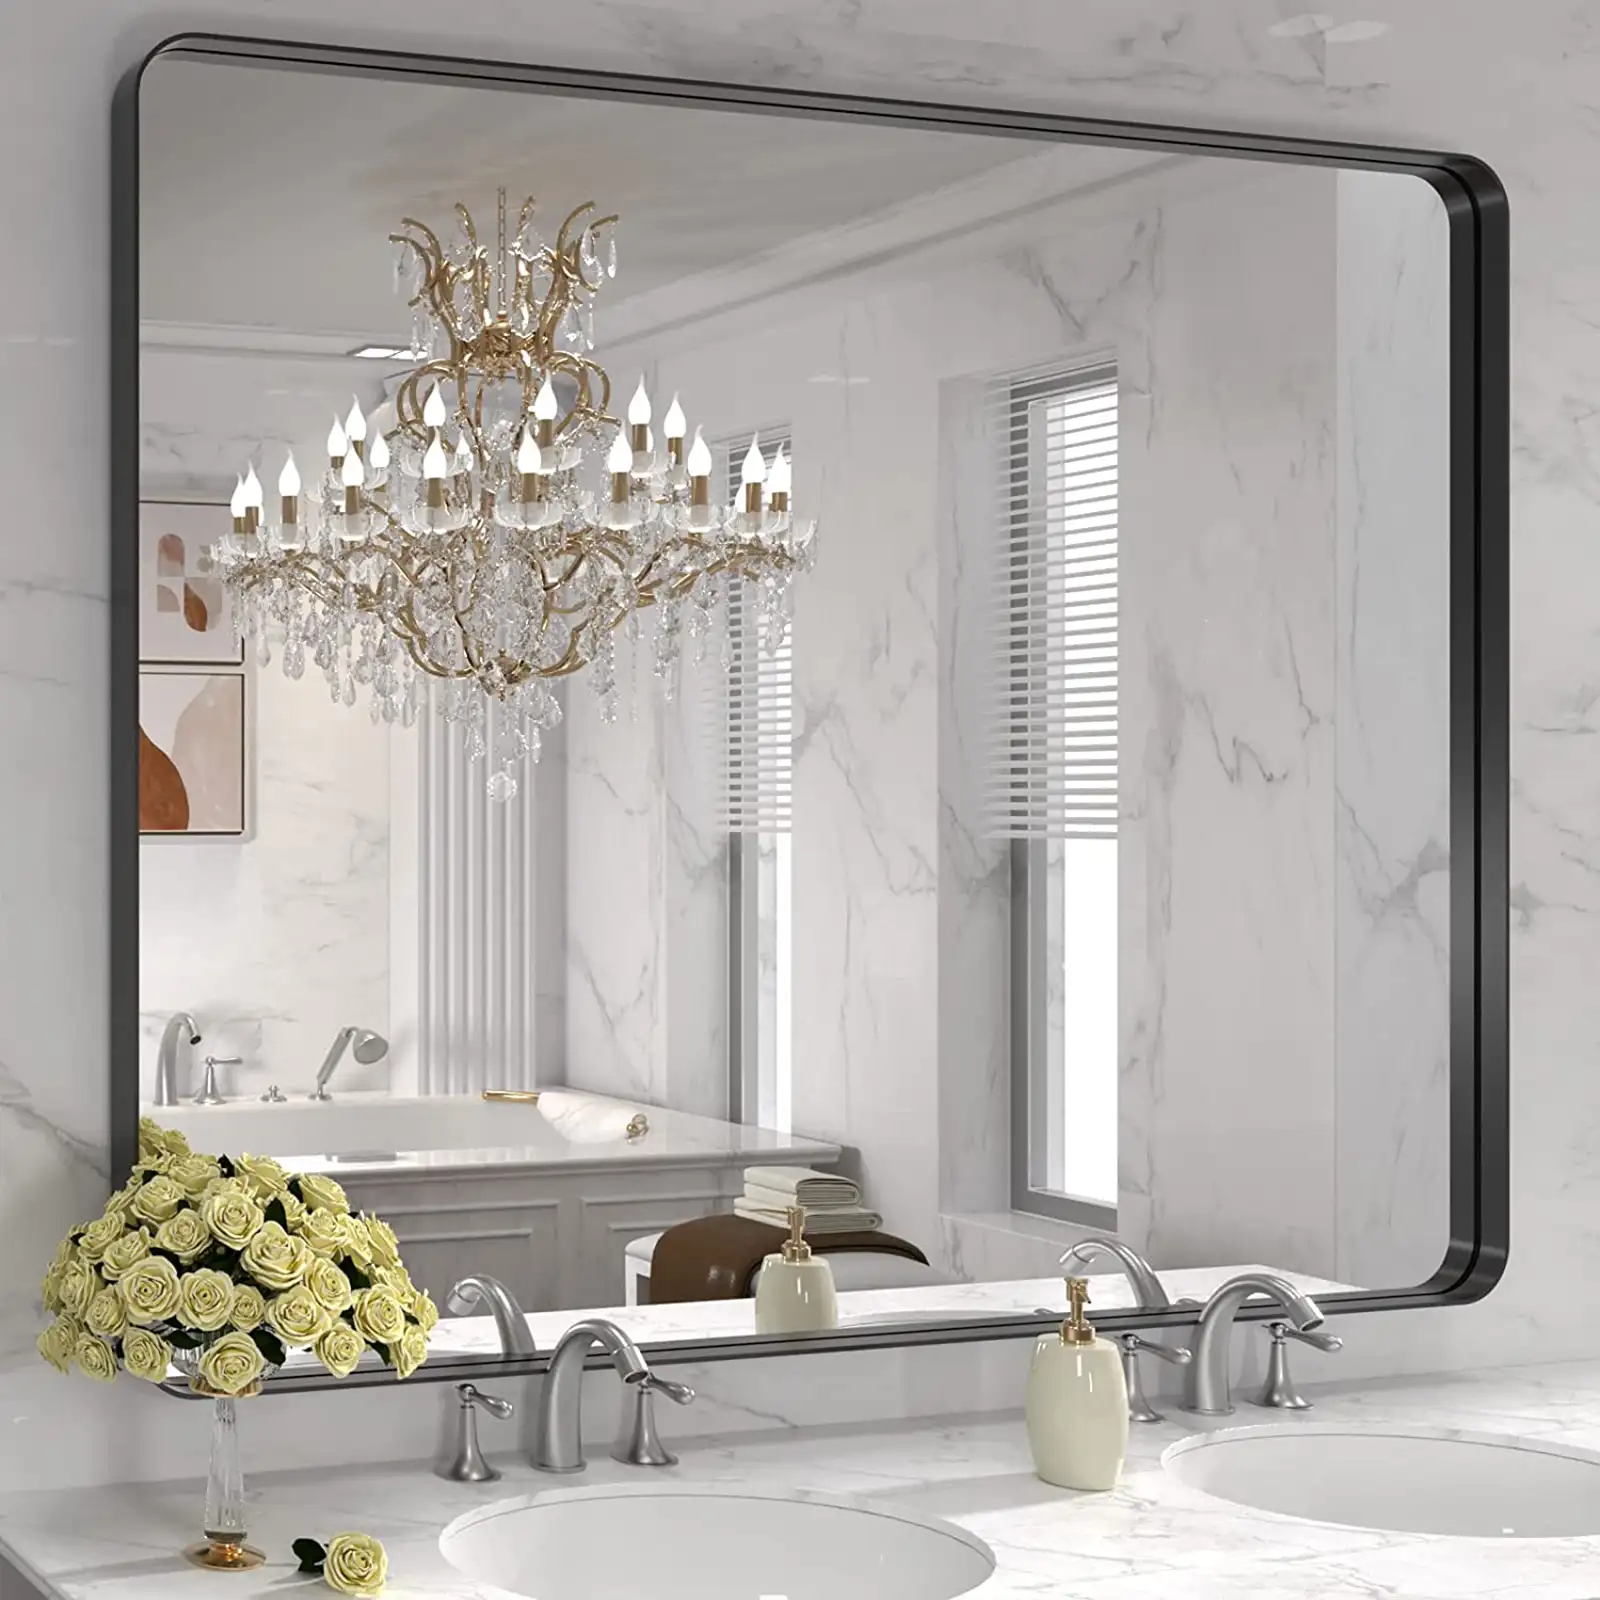 Espejo de baño con marco de metal negro para pared, espejo de tocador de baño negro mate, espejo rectangular redondeado grande, antioxidante, inastillable, se cuelga horizontal o verticalmente 